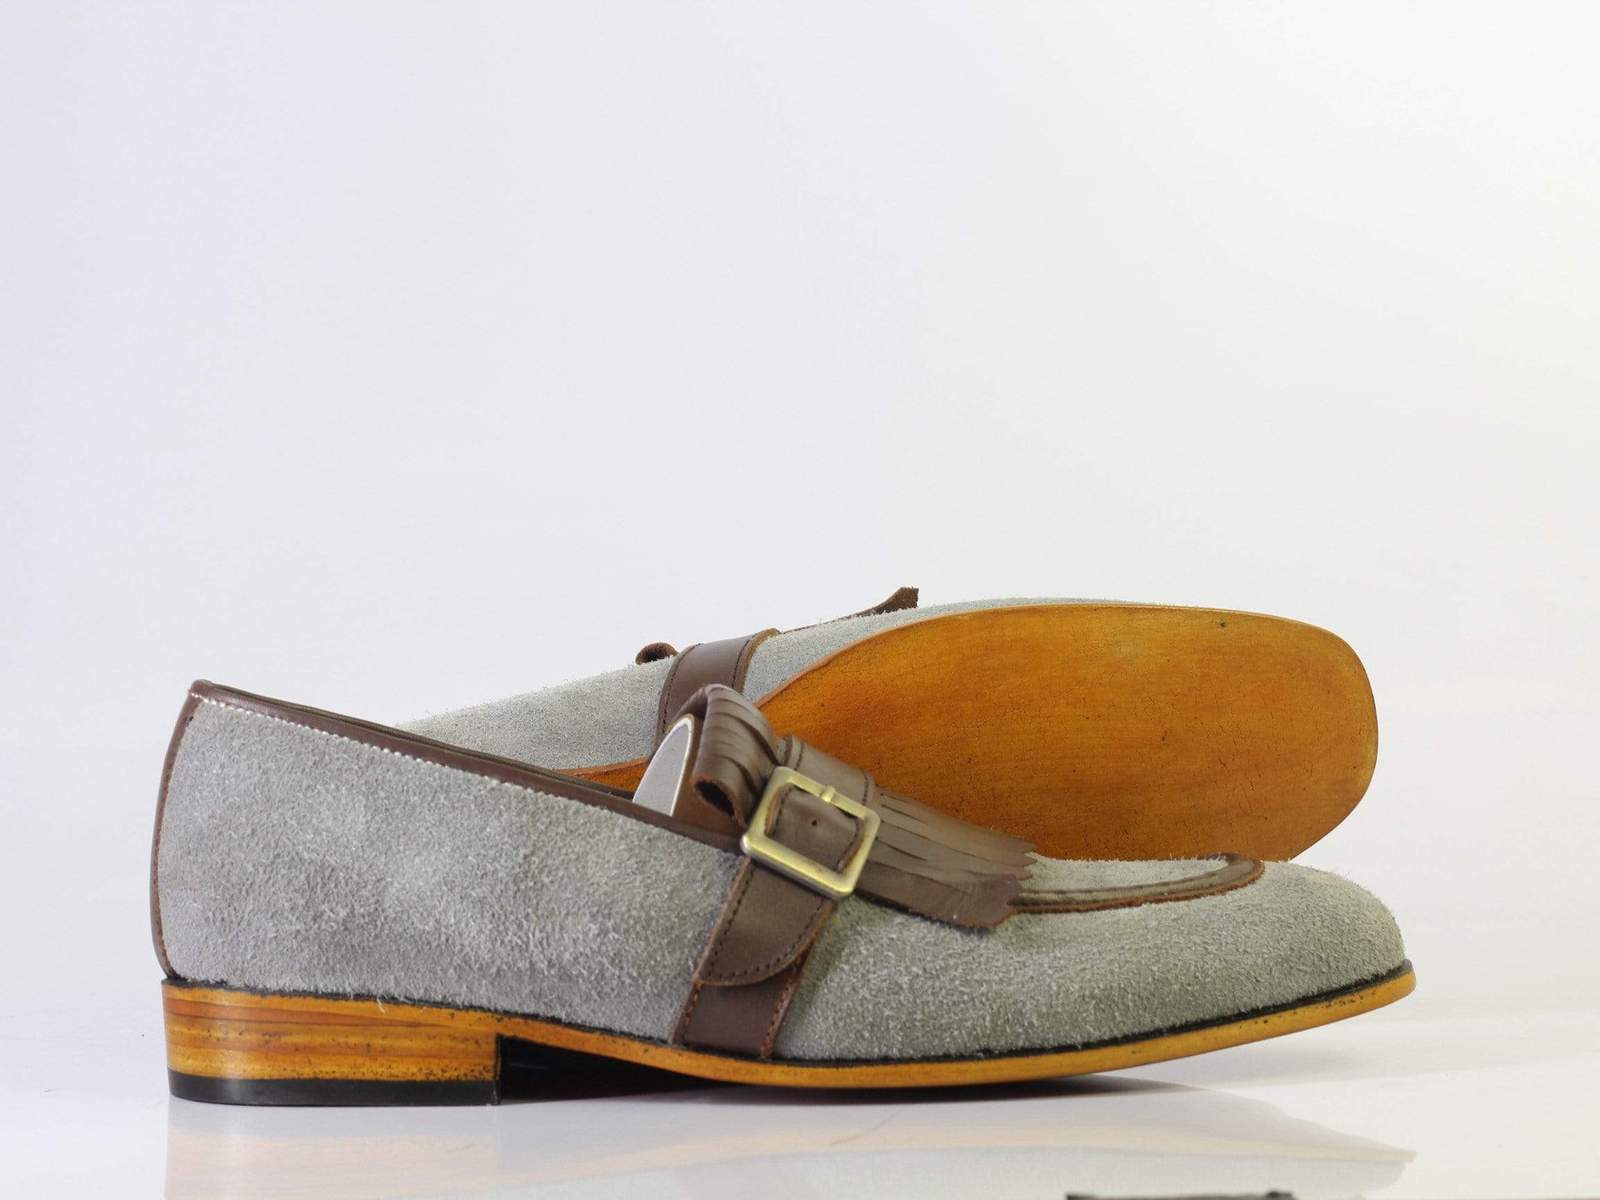 Bespoke Grey & Brown Buckle Leather Fringe Loafers for Men's - Dress/Formal